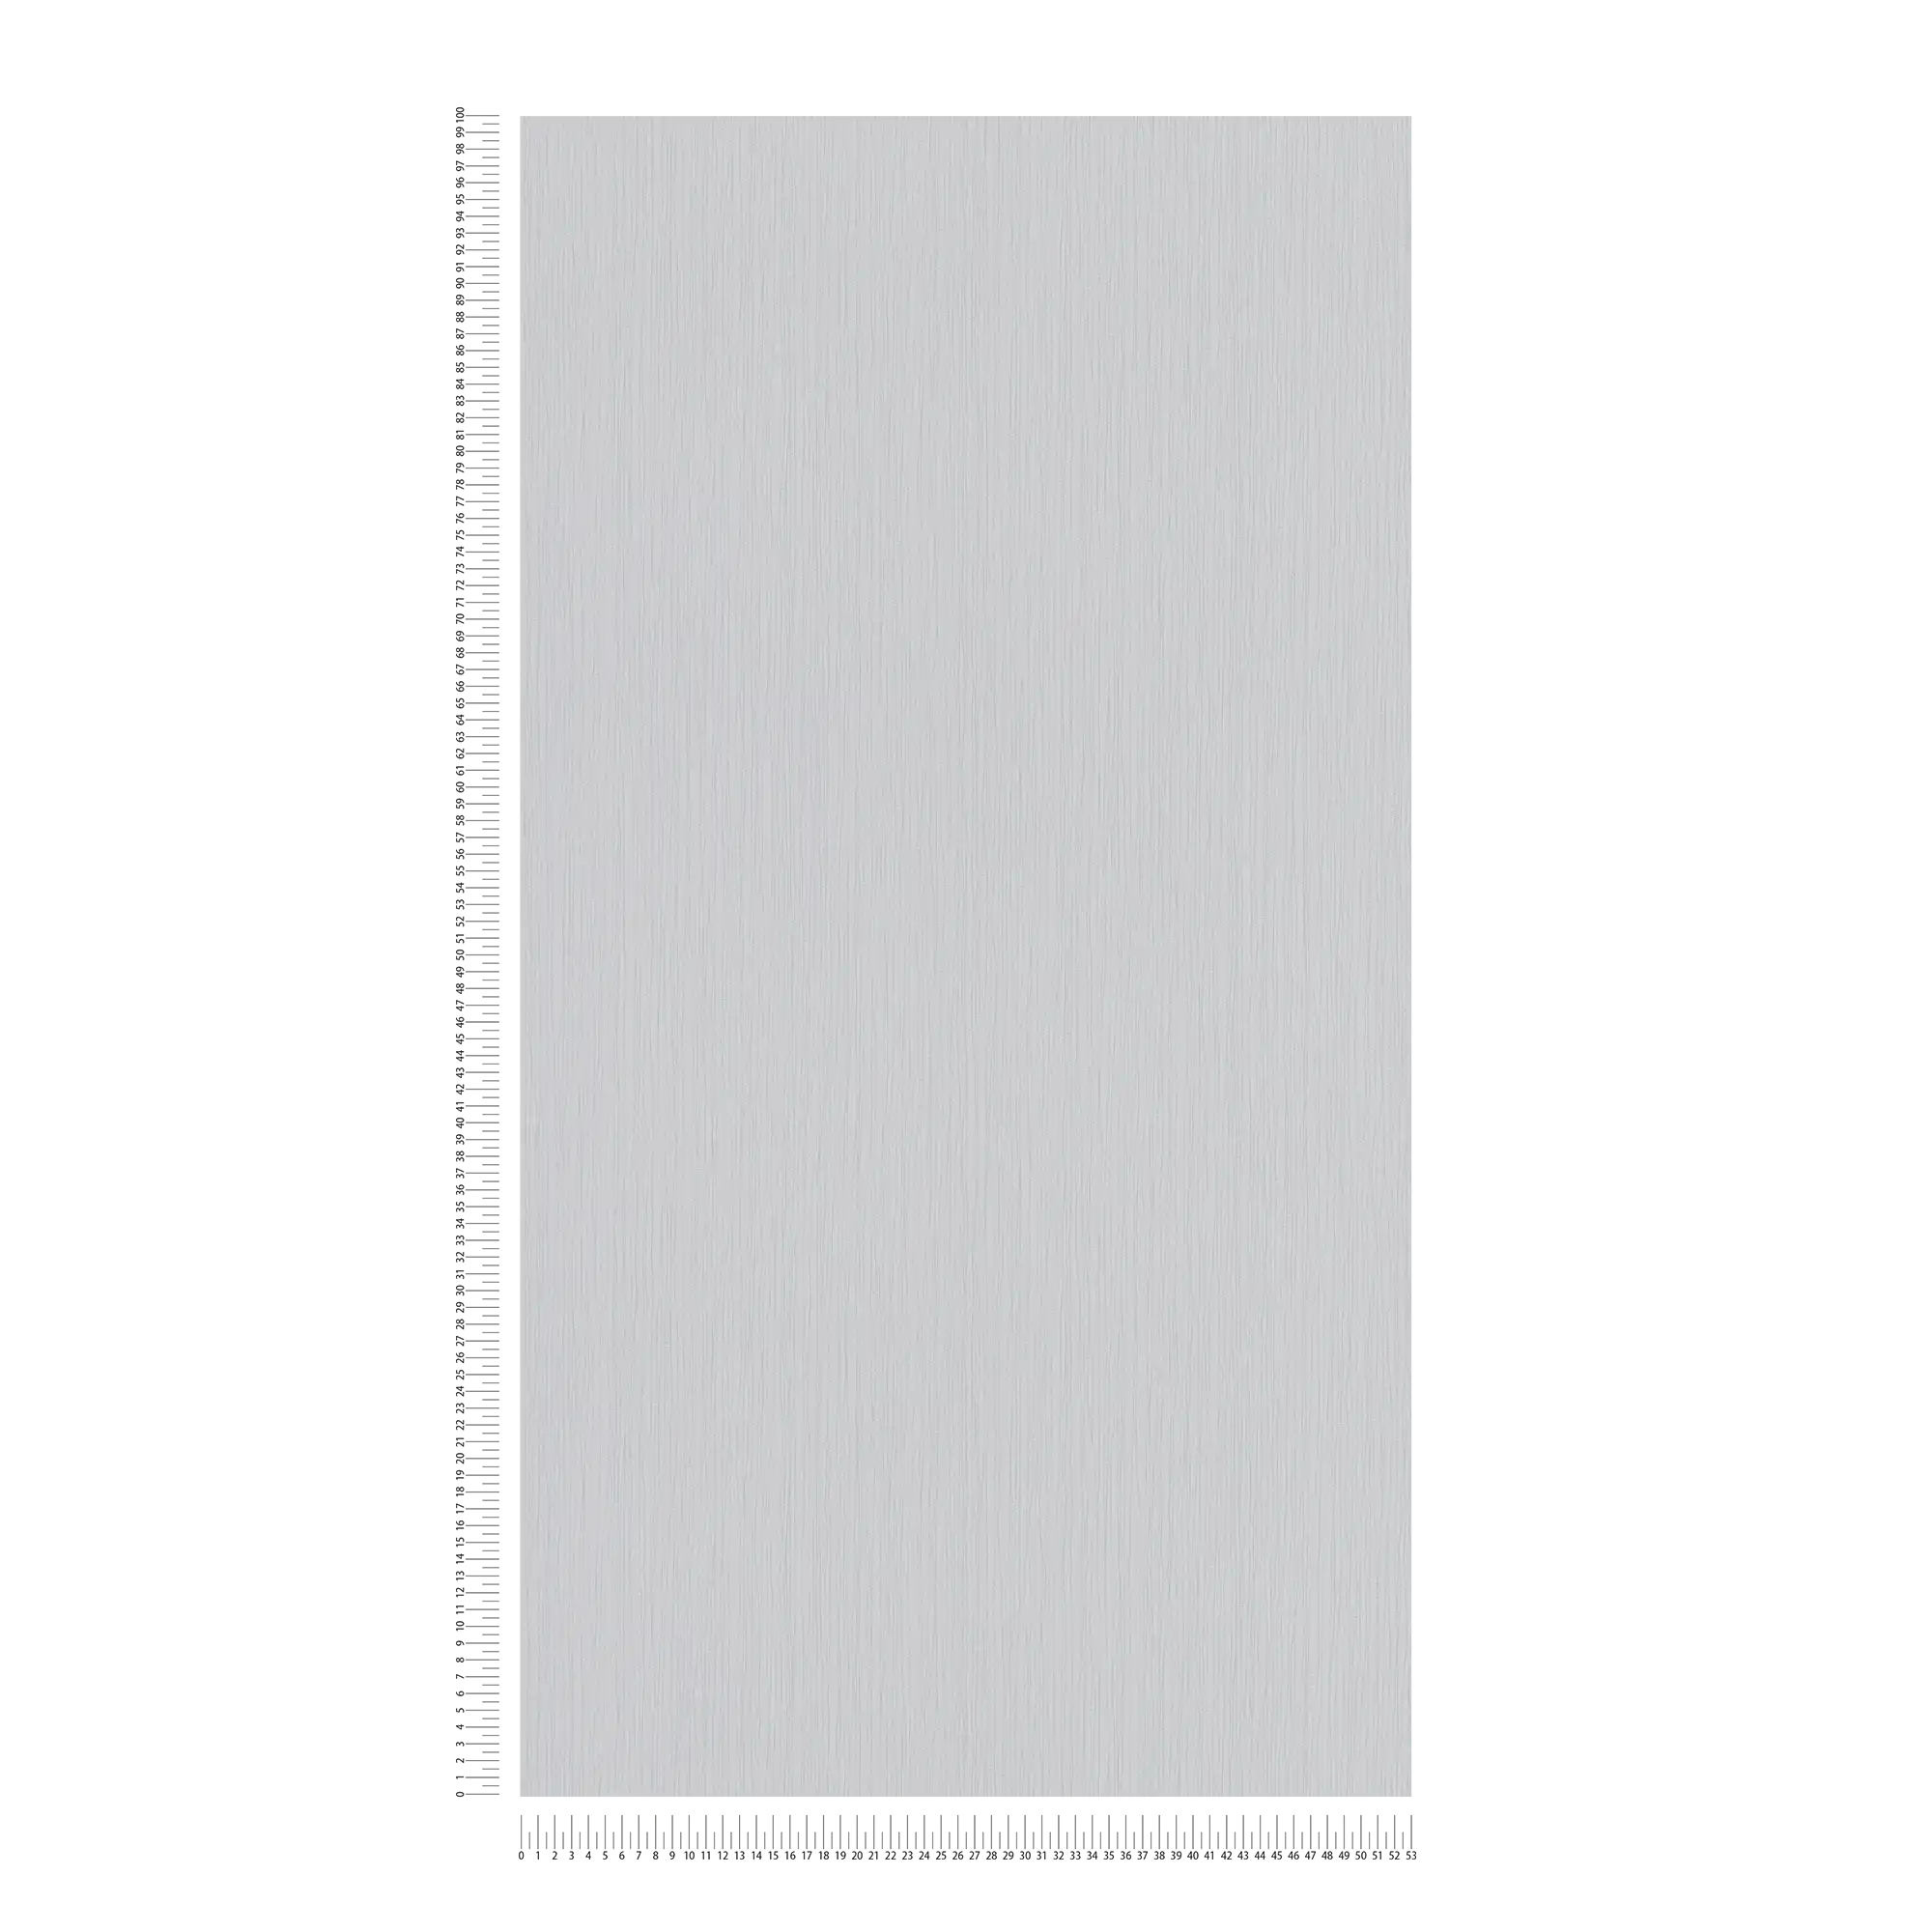             Vliesbehang beton grijs met lijn arceringen - grijs
        